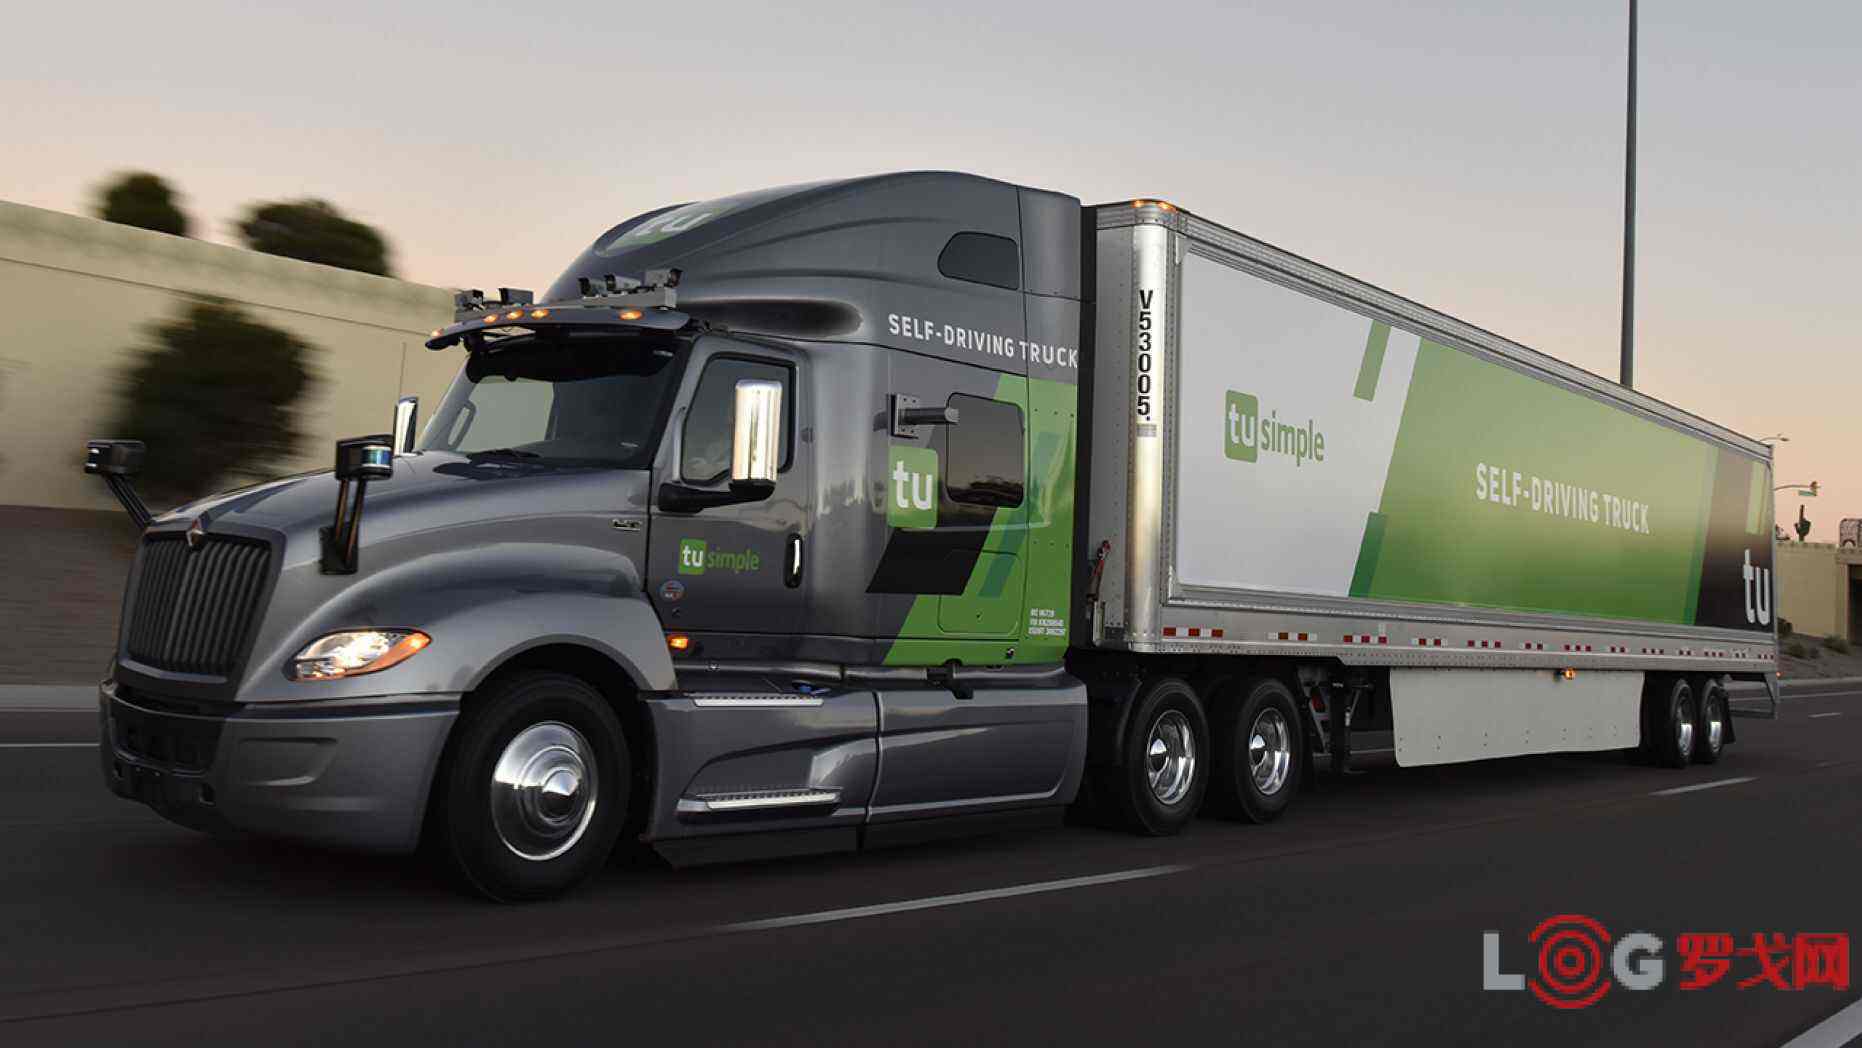 吉利集团旗下电动卡车品牌“远程汽车”正在寻求约 3 亿美元的融资